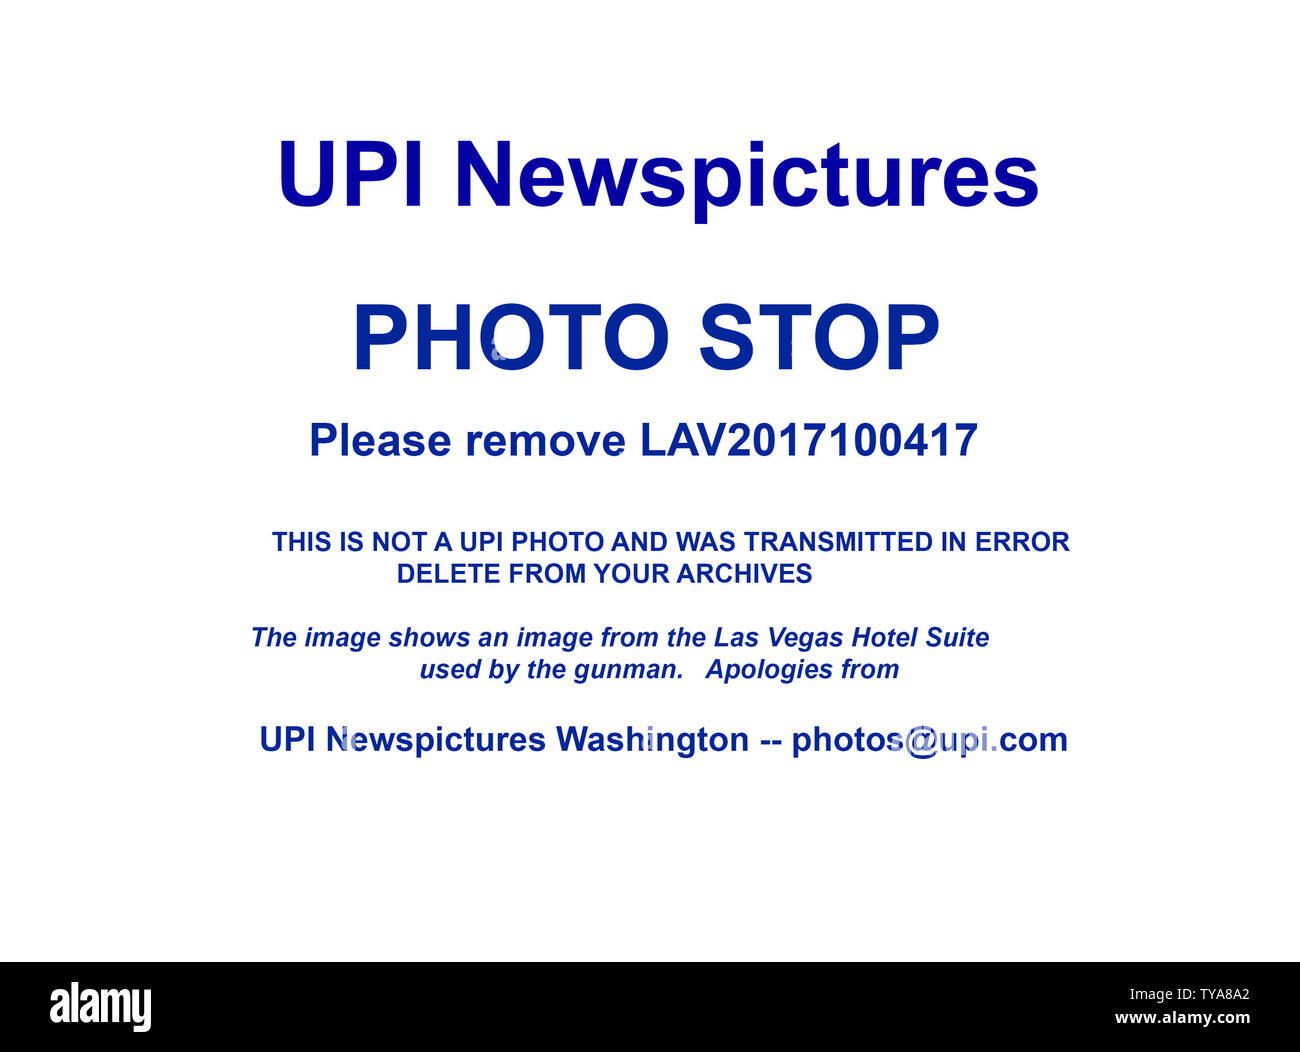 Veuillez déposer votre photo de VBL2017100417 archives qui a été transmis de Las Vegas à environ 815h USA de l'est le 4 octobre 2017 (1215 GMT Oct 5th). Ce n'est pas une photo d'UPI et doit être retiré de vos archives. Il montre la scène du crime à la Las Vegas hôtel suite utilisés par le tireur. Il s'agit d'un arrêt photo obligatoire, il doit être retiré de vos archives et de ne pas être utilisée. UPI Newspictures excuses pour cette erreur. Je vous remercie, UPI Washington ptb photos@upi.com Banque D'Images